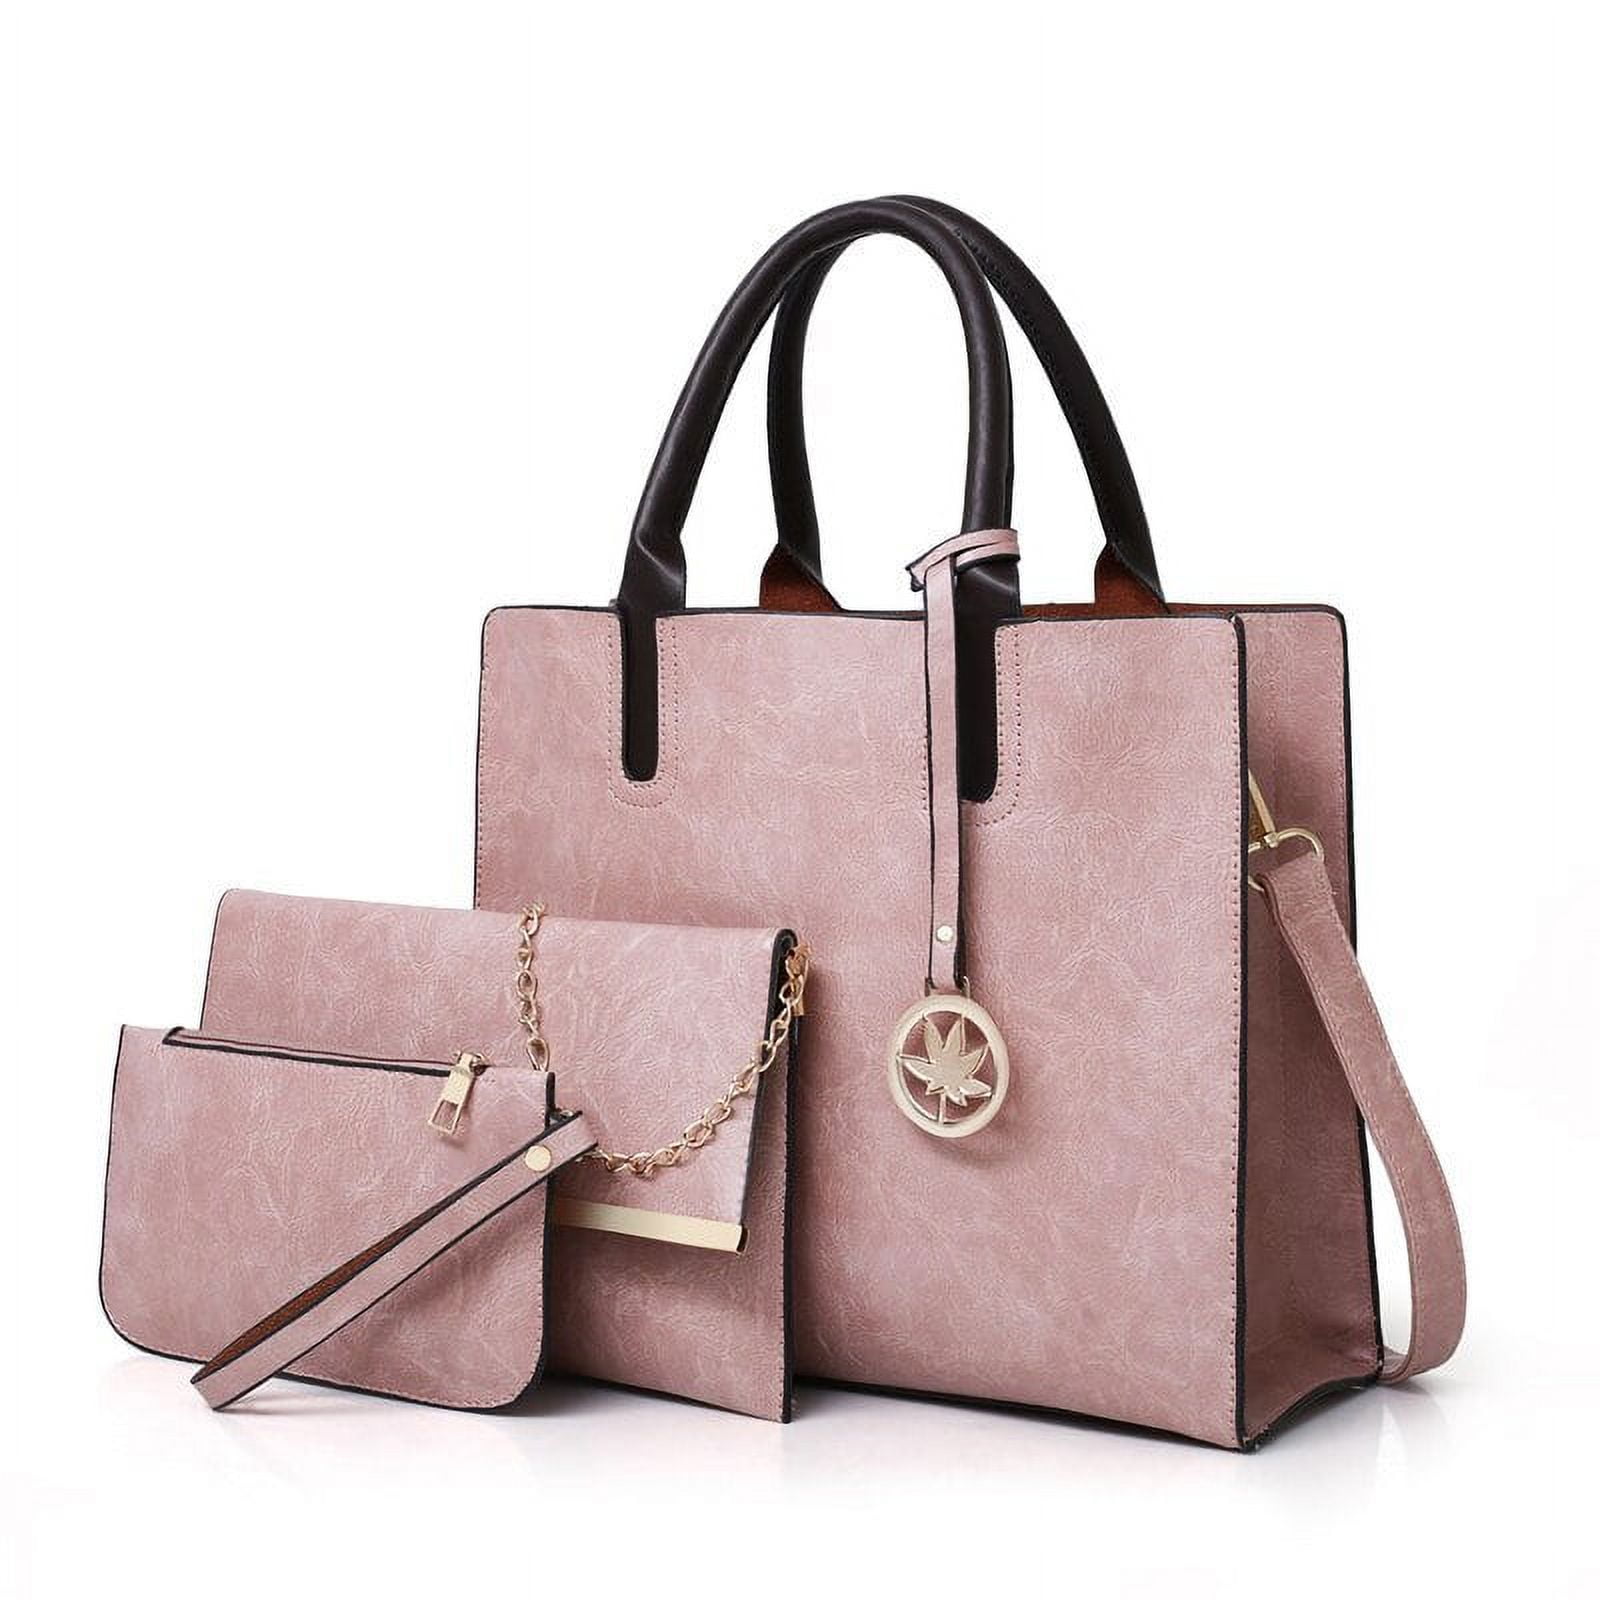 CoCopeaunts New Womens bag Shoulder bag handbags for women sac de